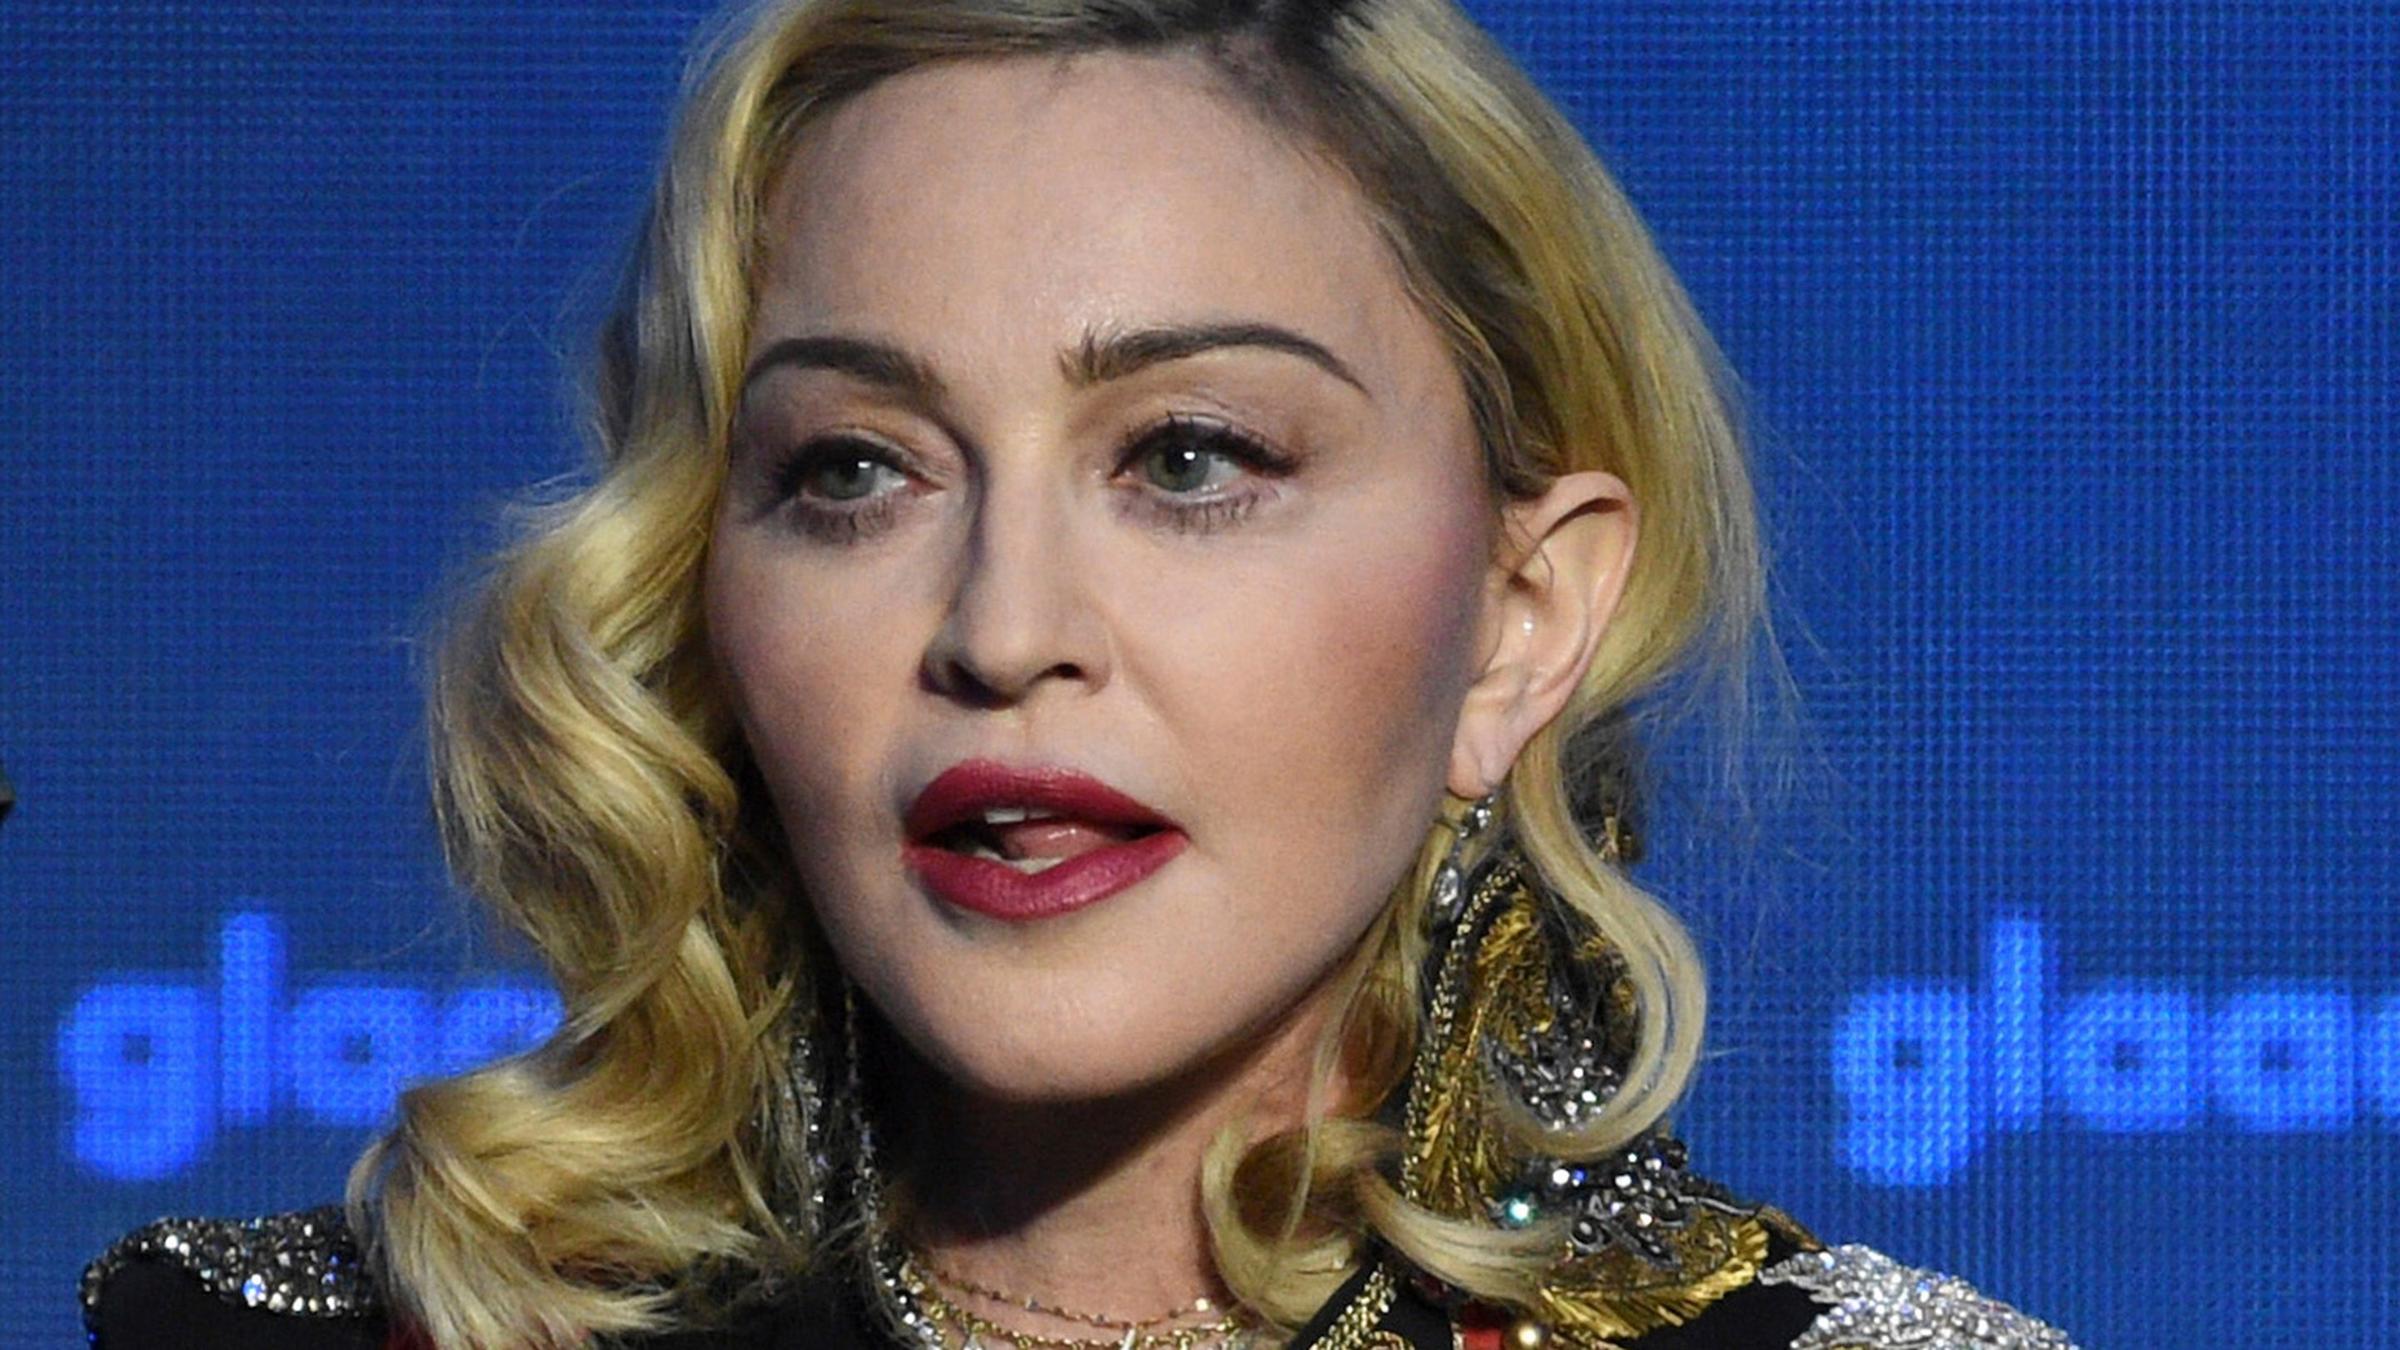 Falschaussagen Zu Corona Instagram Loscht Madonna Beitrag Zdfheute